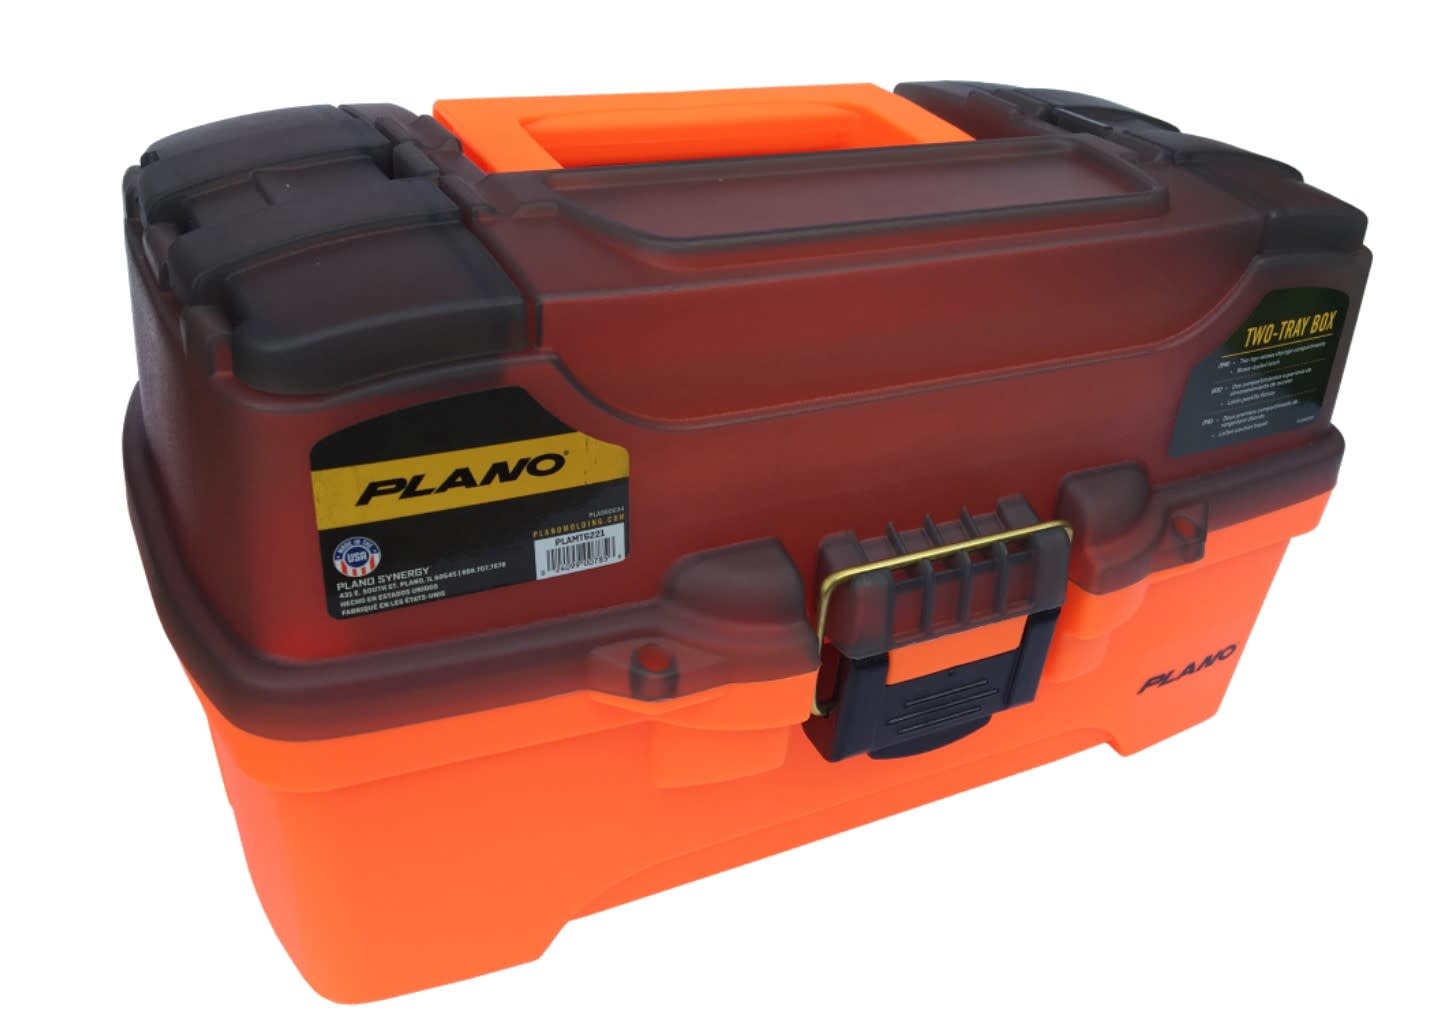 Plano PLAMT6221 2-Tray Box - Angler's Choice Tackle